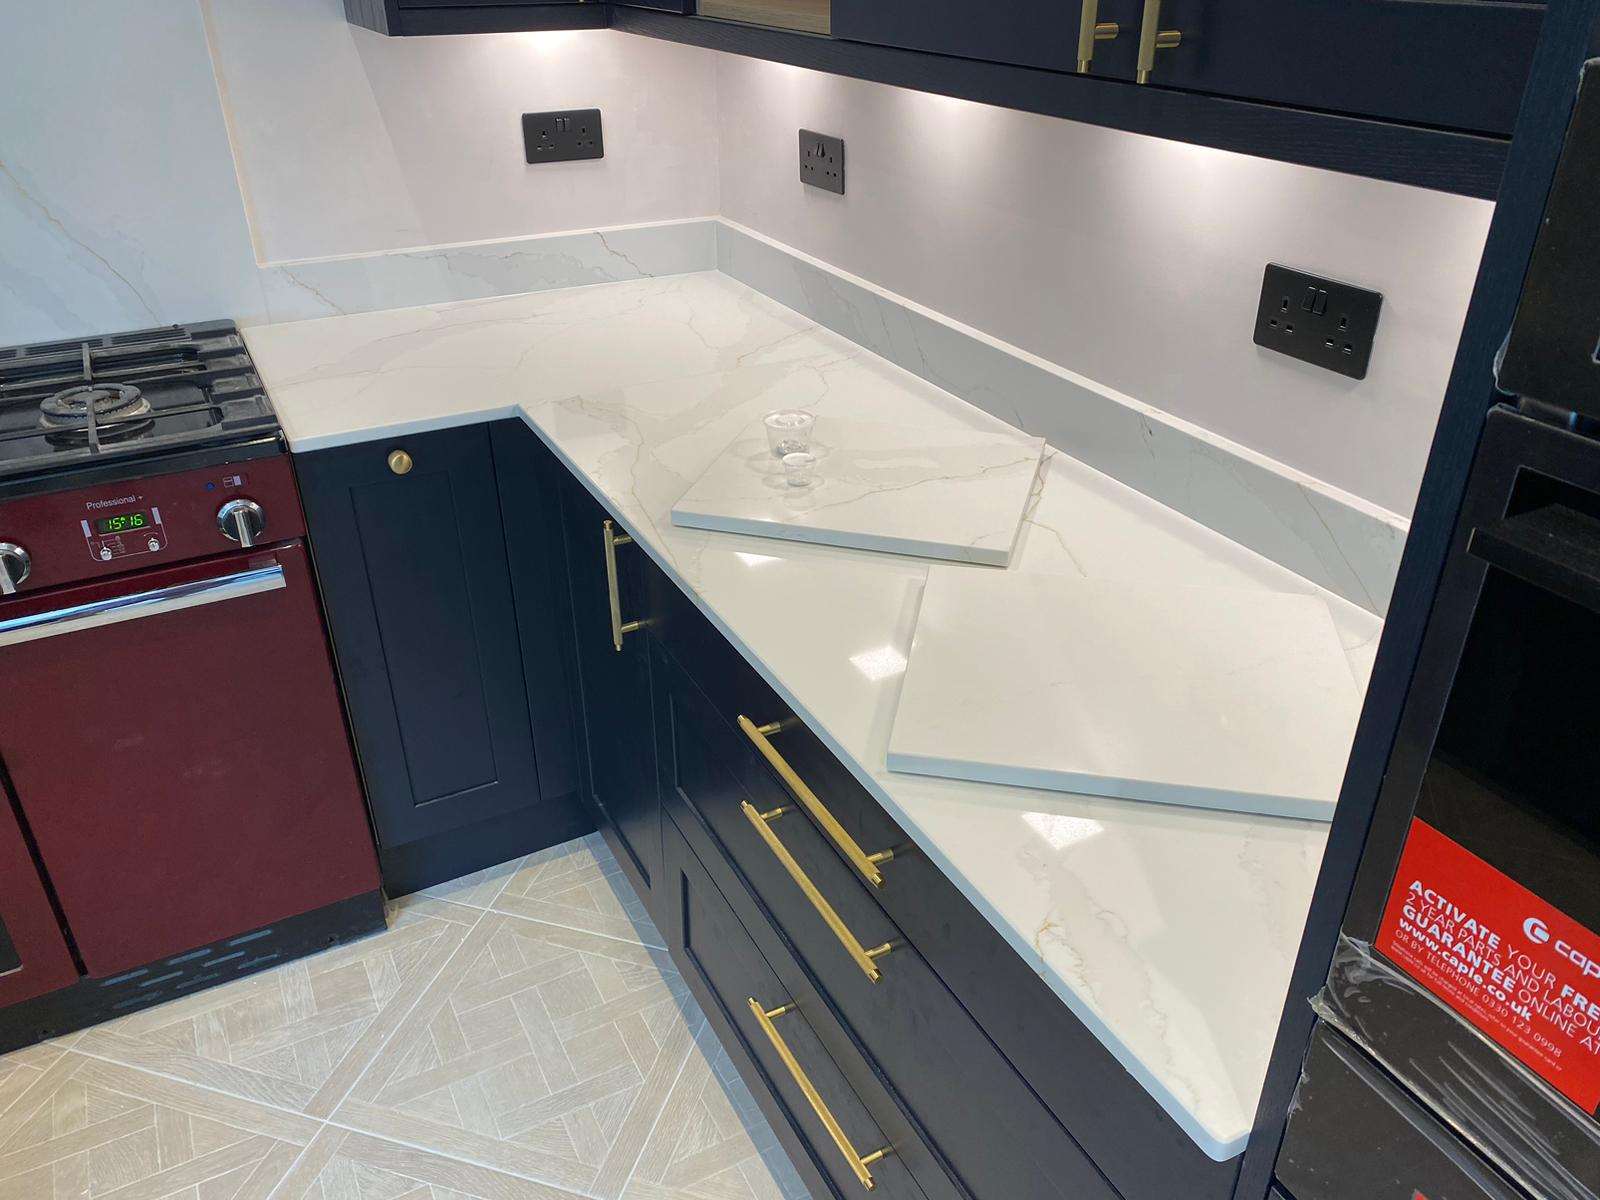 Fugen Calacatta Oro marble effect Quartz kitchen worktops with soft grey veining and gold veins running through it.